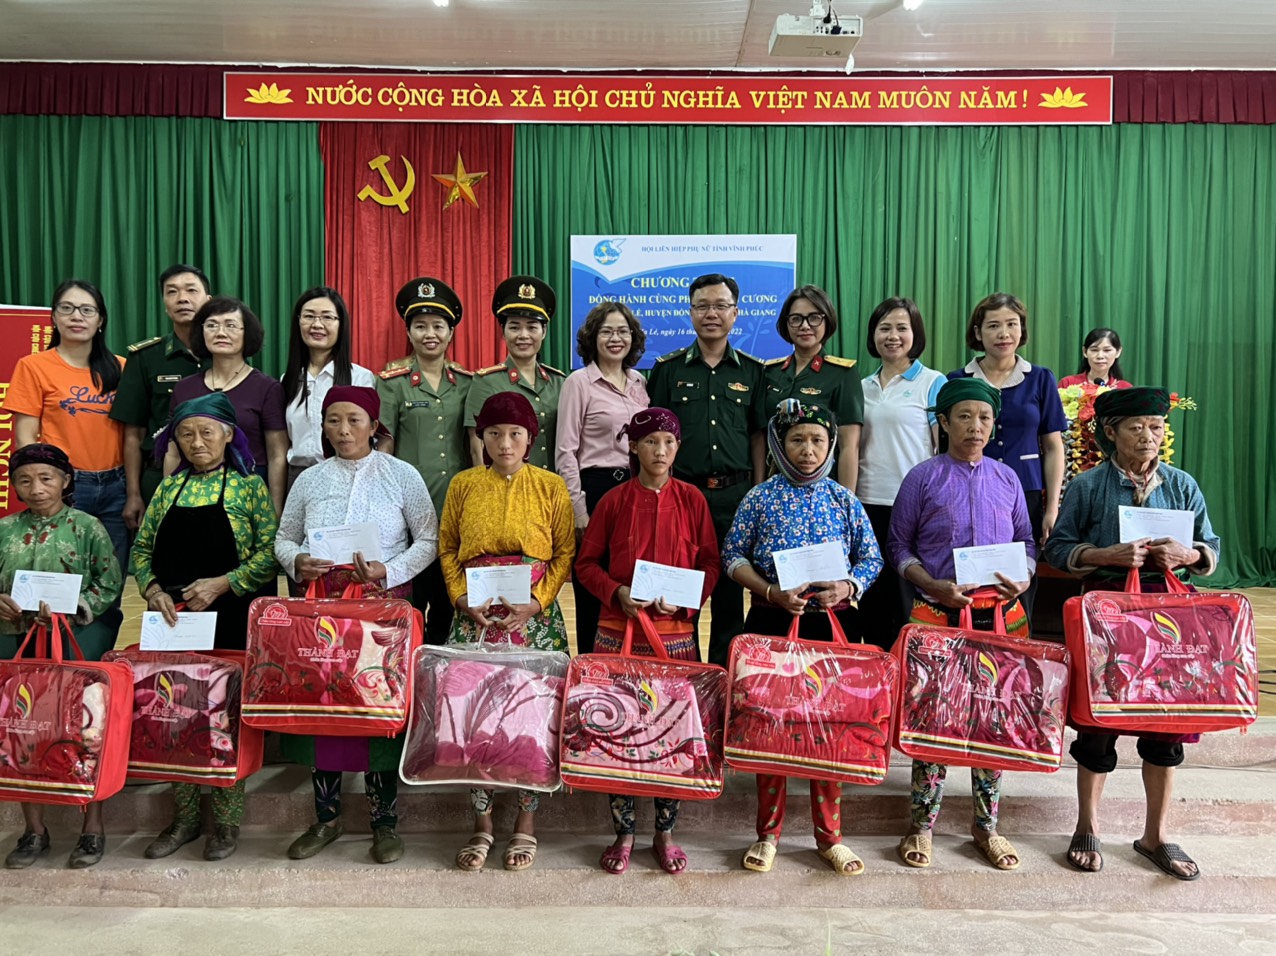 Trao tặng 3 mô hình sinh kế cho phụ nữ nghèo ở xã biên giới Hà Tĩnh   Vietnamvn